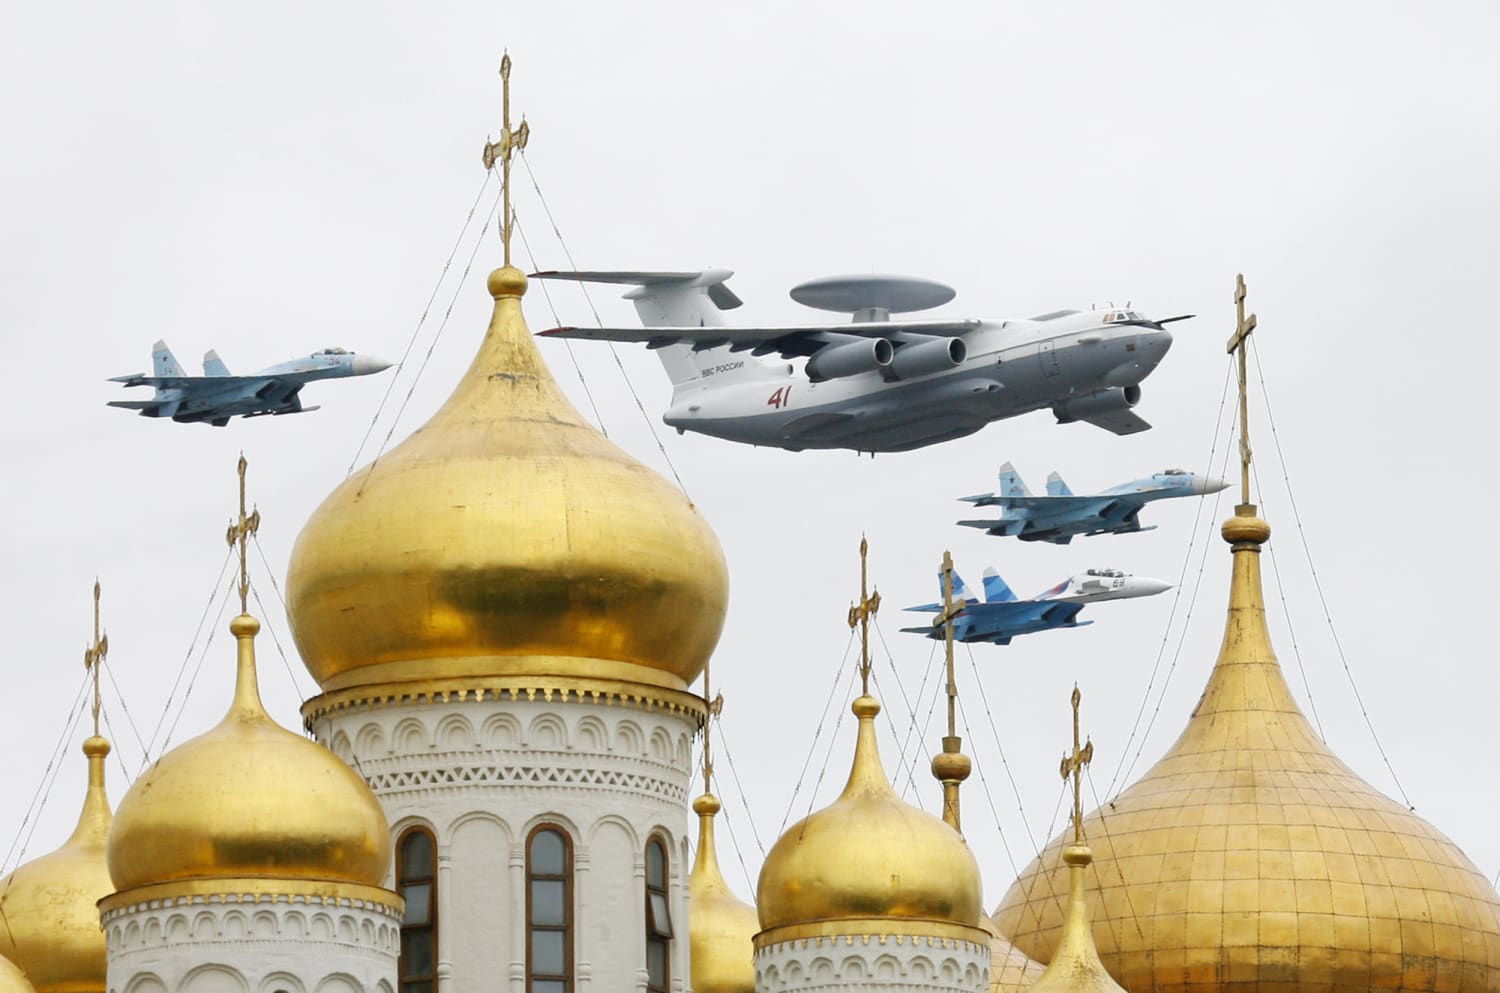 وتقول أوكرانيا إنها أسقطت طائرات الكوماندوز الروسية، في ضربة مكلفة للقوات الجوية لبوتين